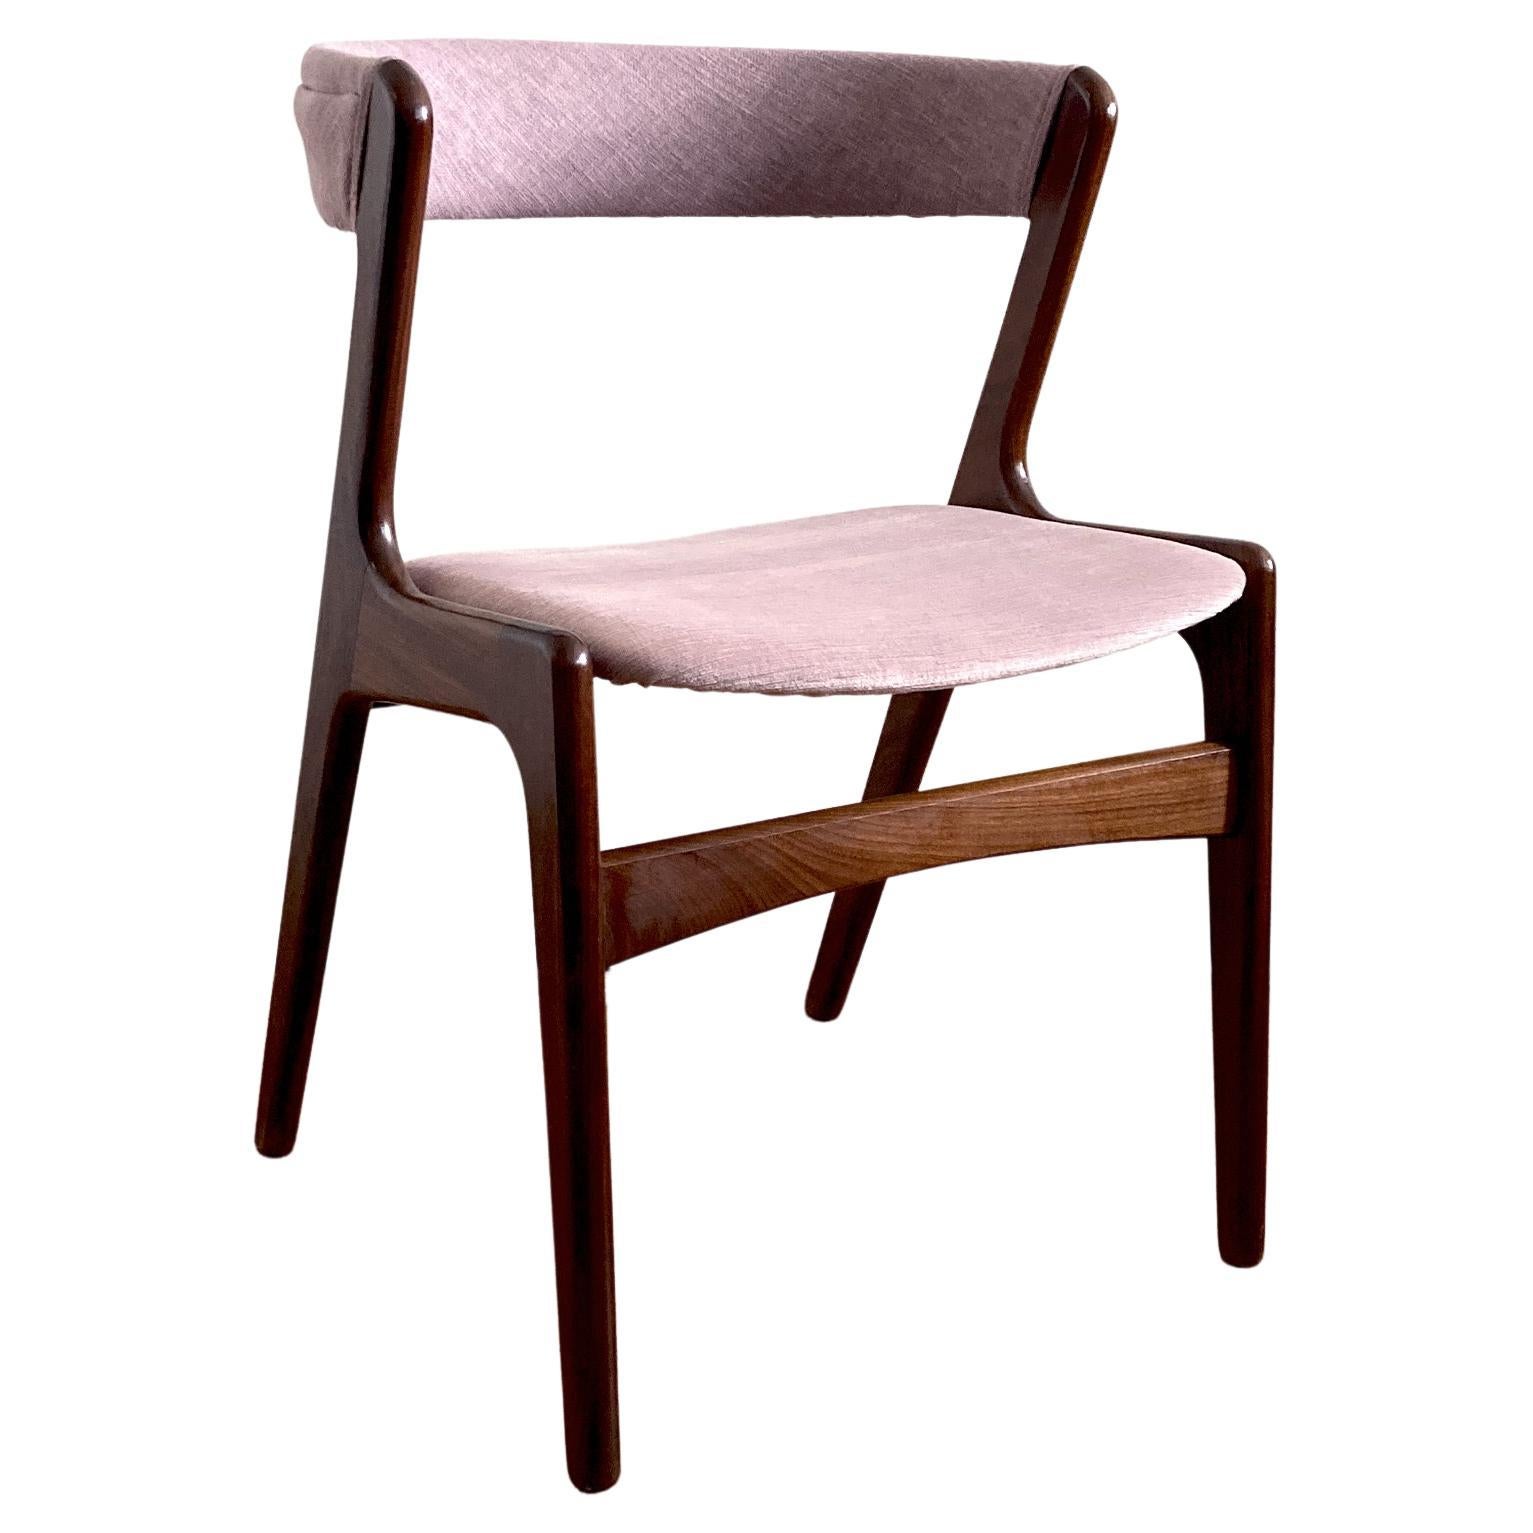 Kai Kristiansen Mauve-Pink Stuhl mit gebogener Rückenlehne, 1960er Jahre